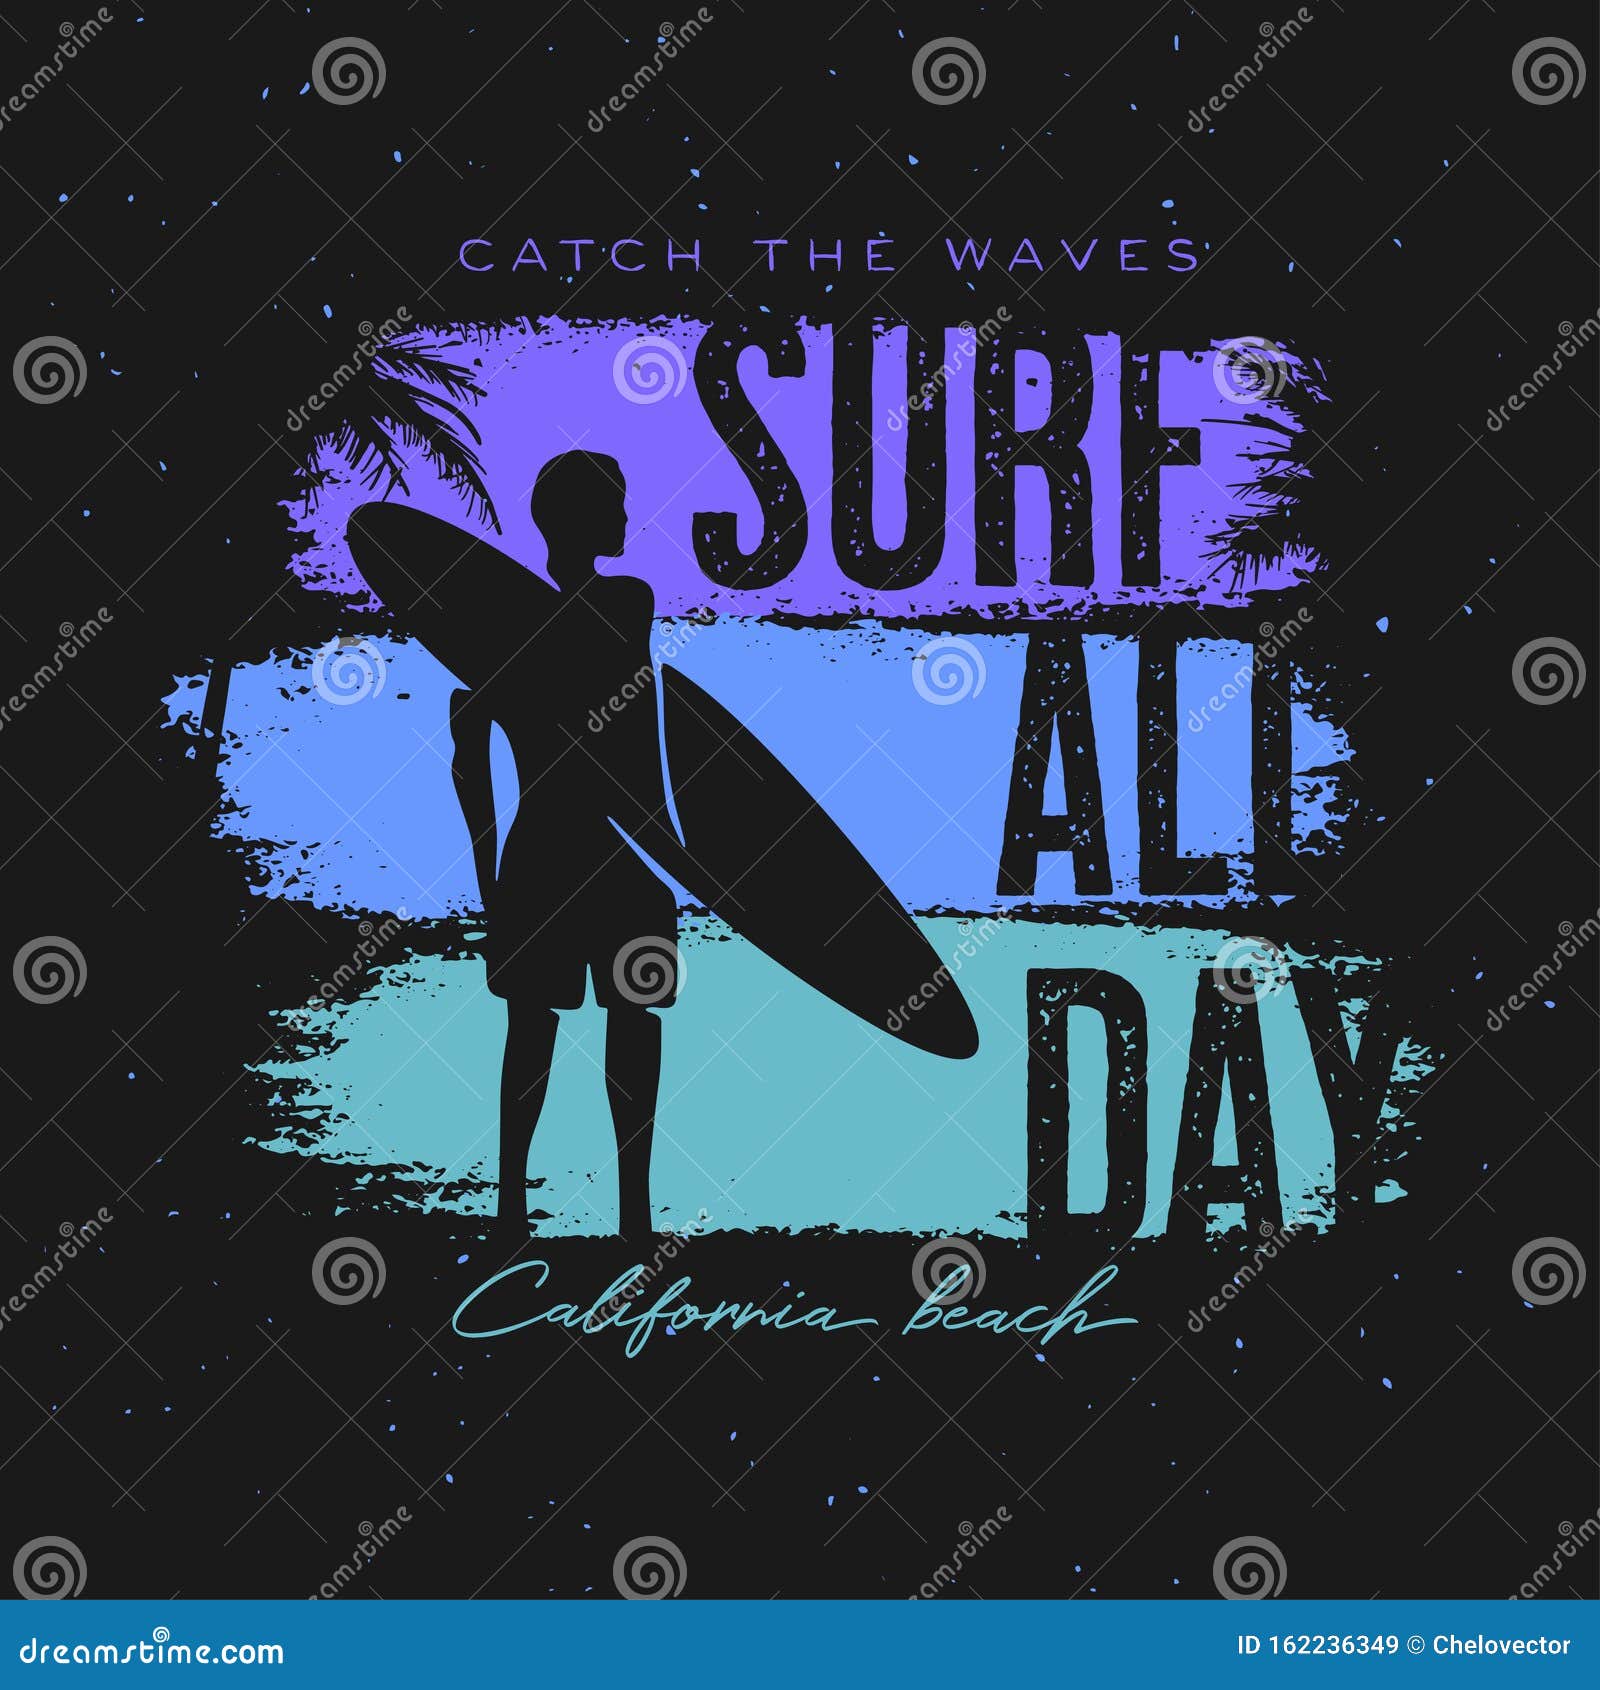 California Surfing T-shirt Apparel Design. Vector Illustration. Stock ...